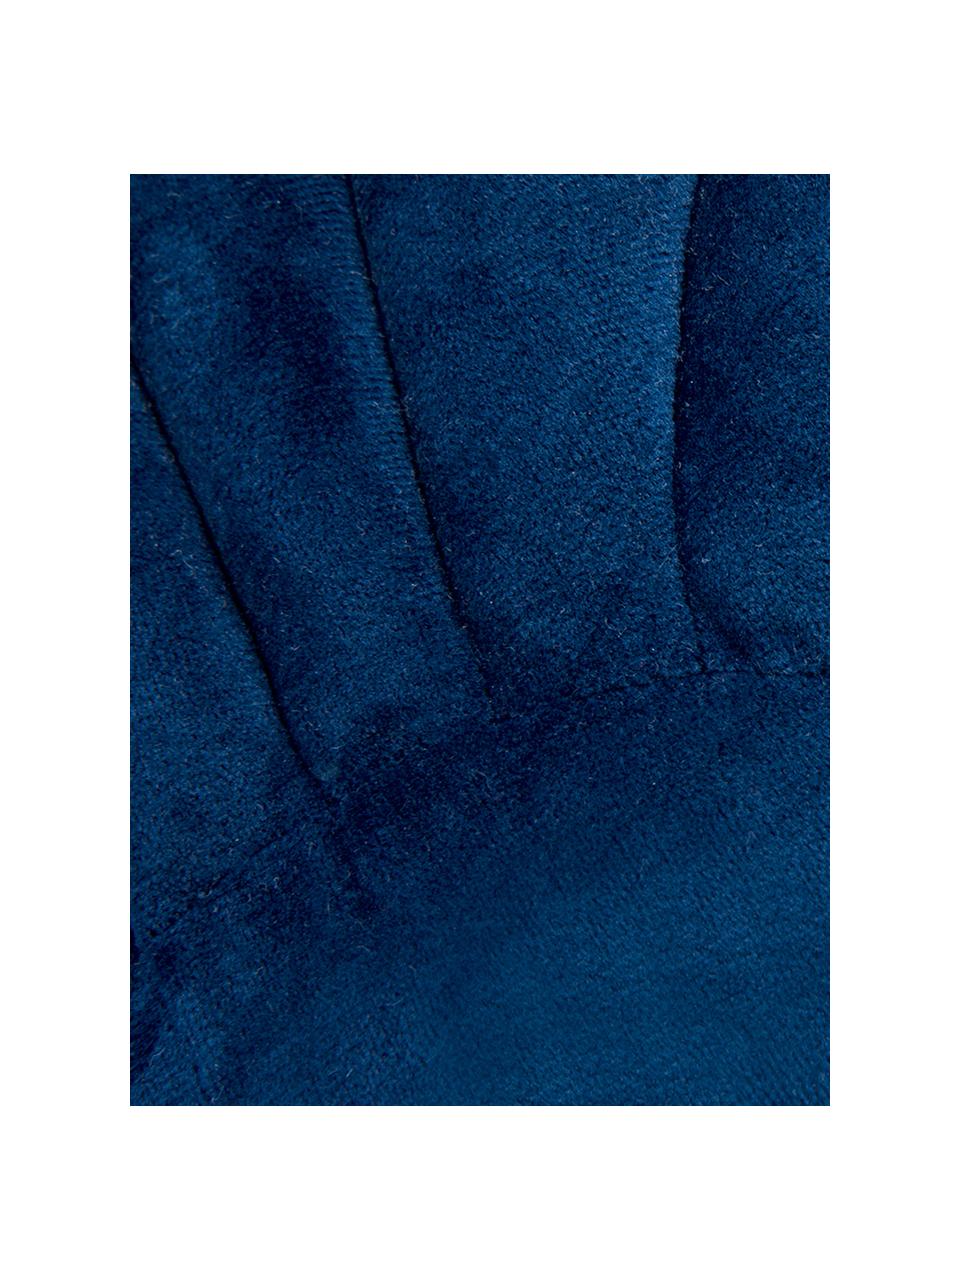 Cojín de terciopelo Shel, con relleno, Parte delantera: 100% terciopelo de algodó, Parte trasera: 100% algodón, Azul oscuro, An 28 x L 30 cm